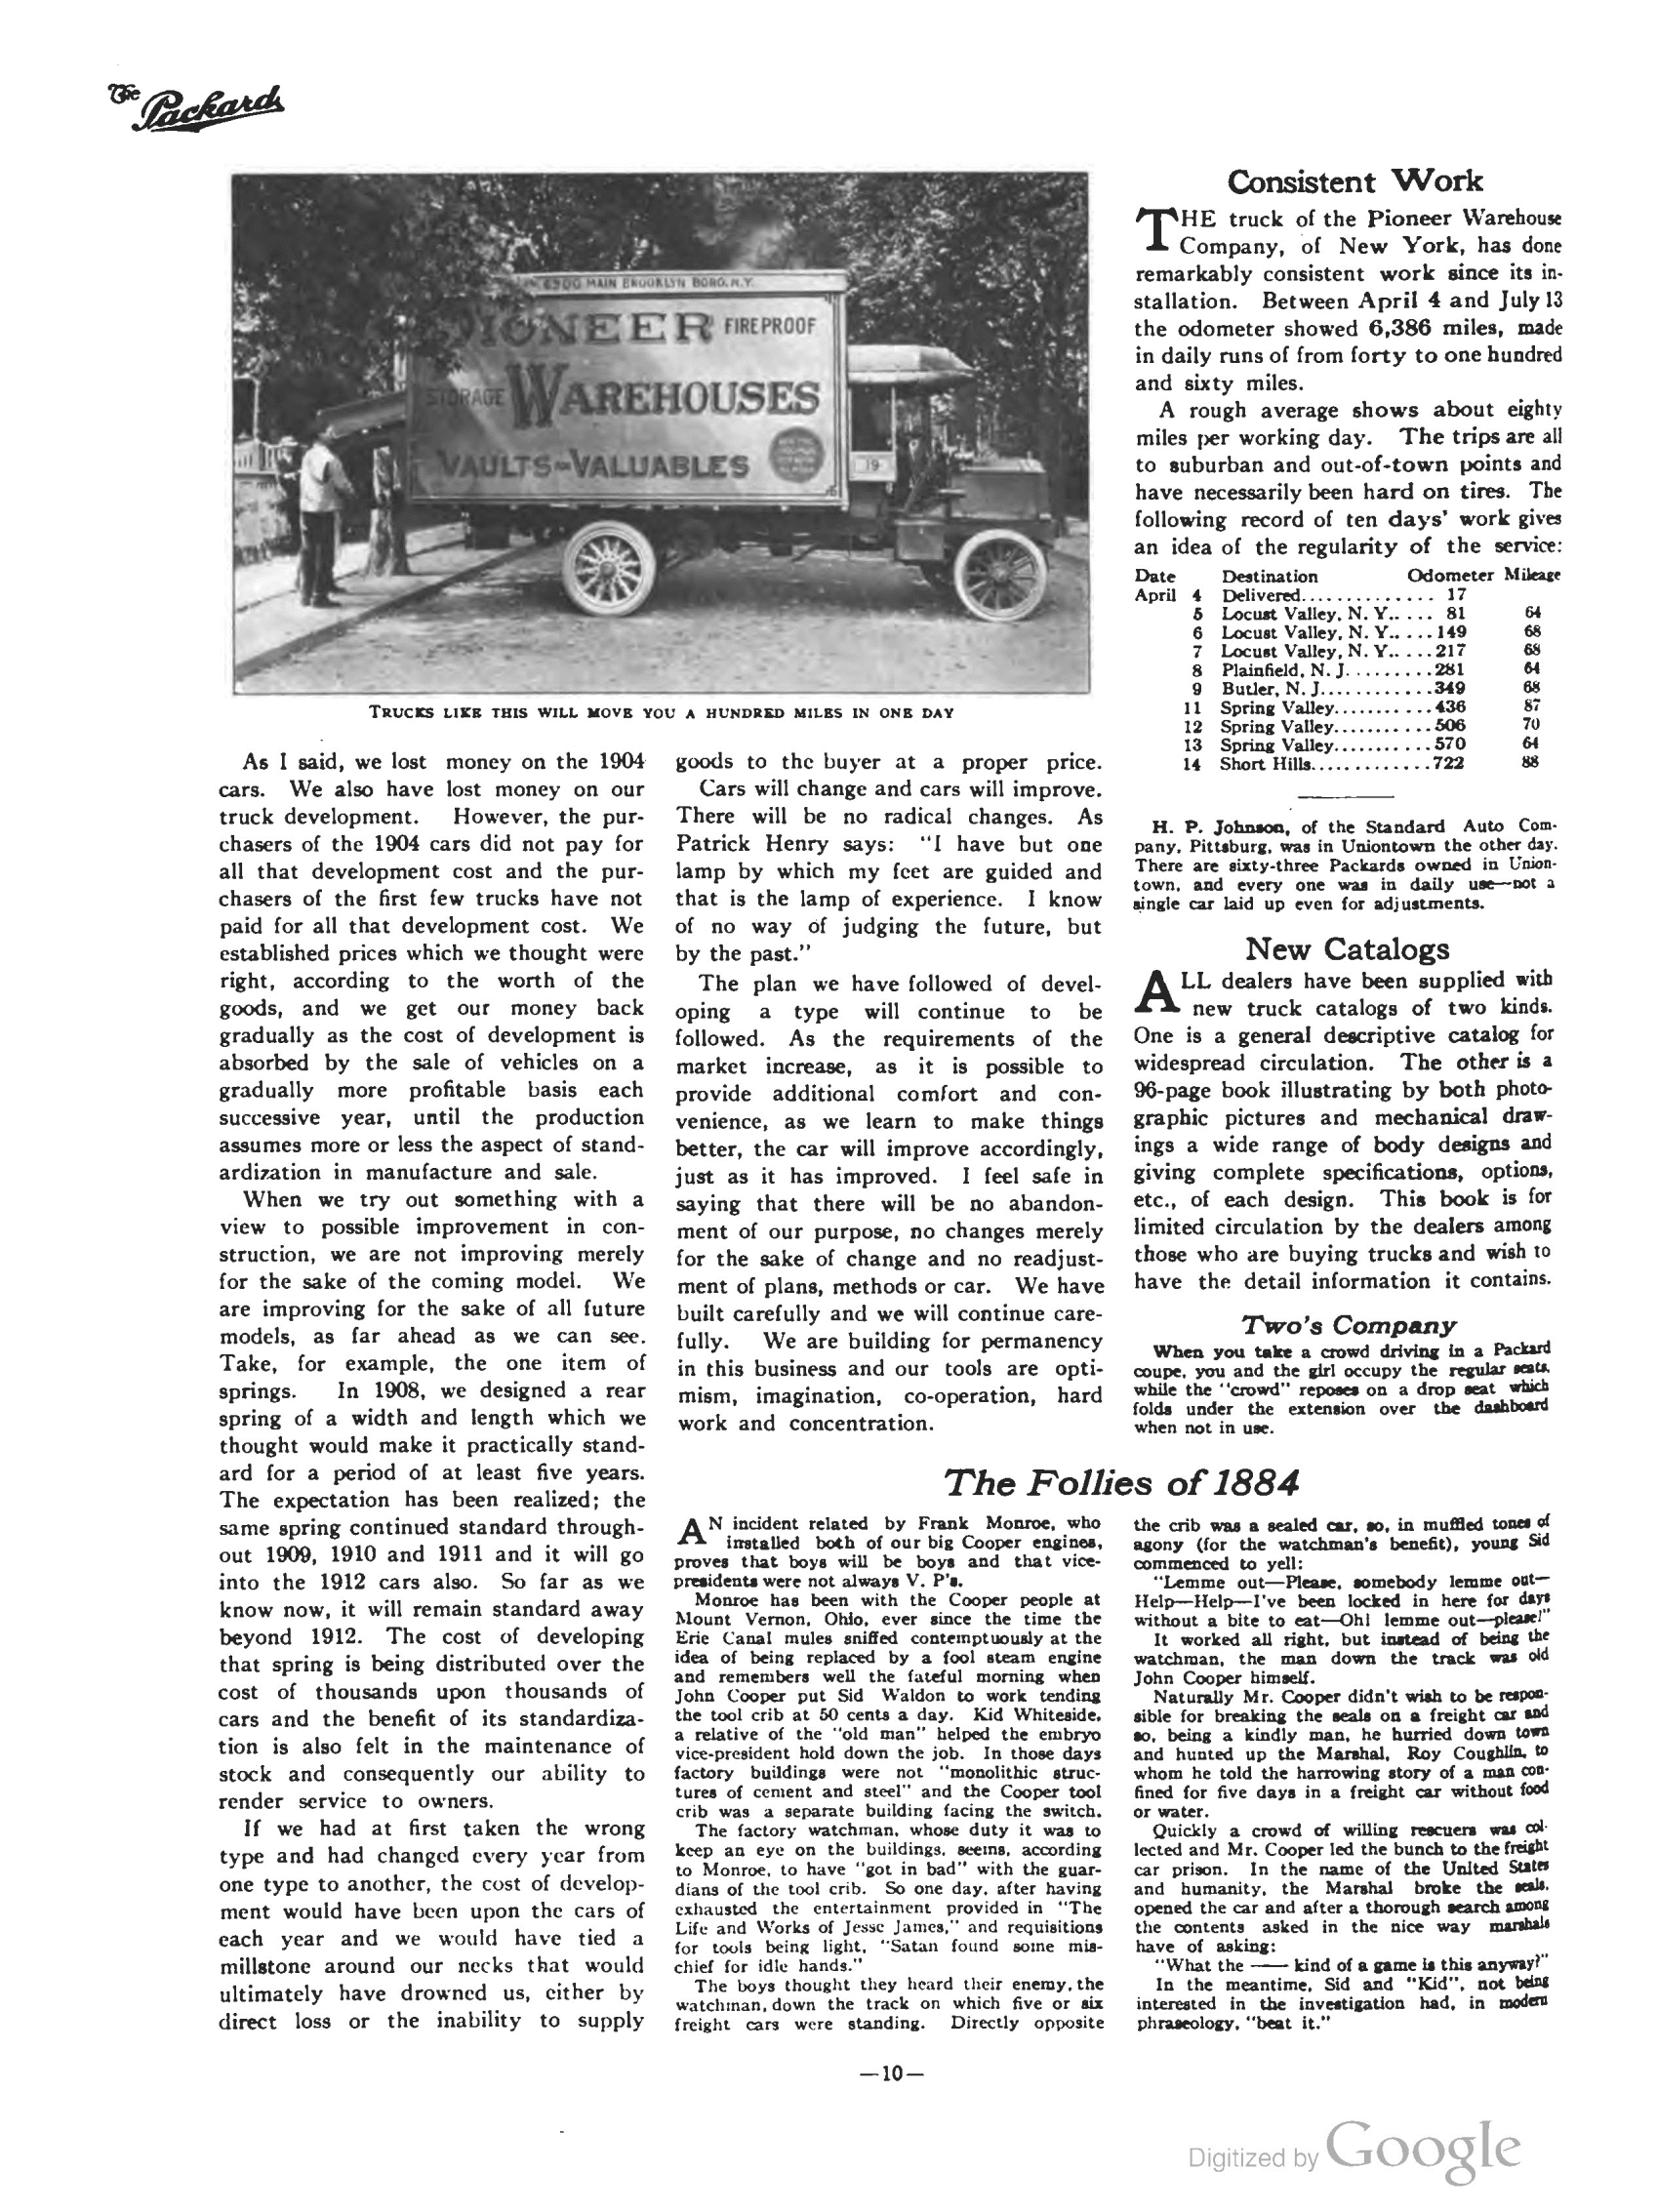 1911_The_Packard_Newsletter-012